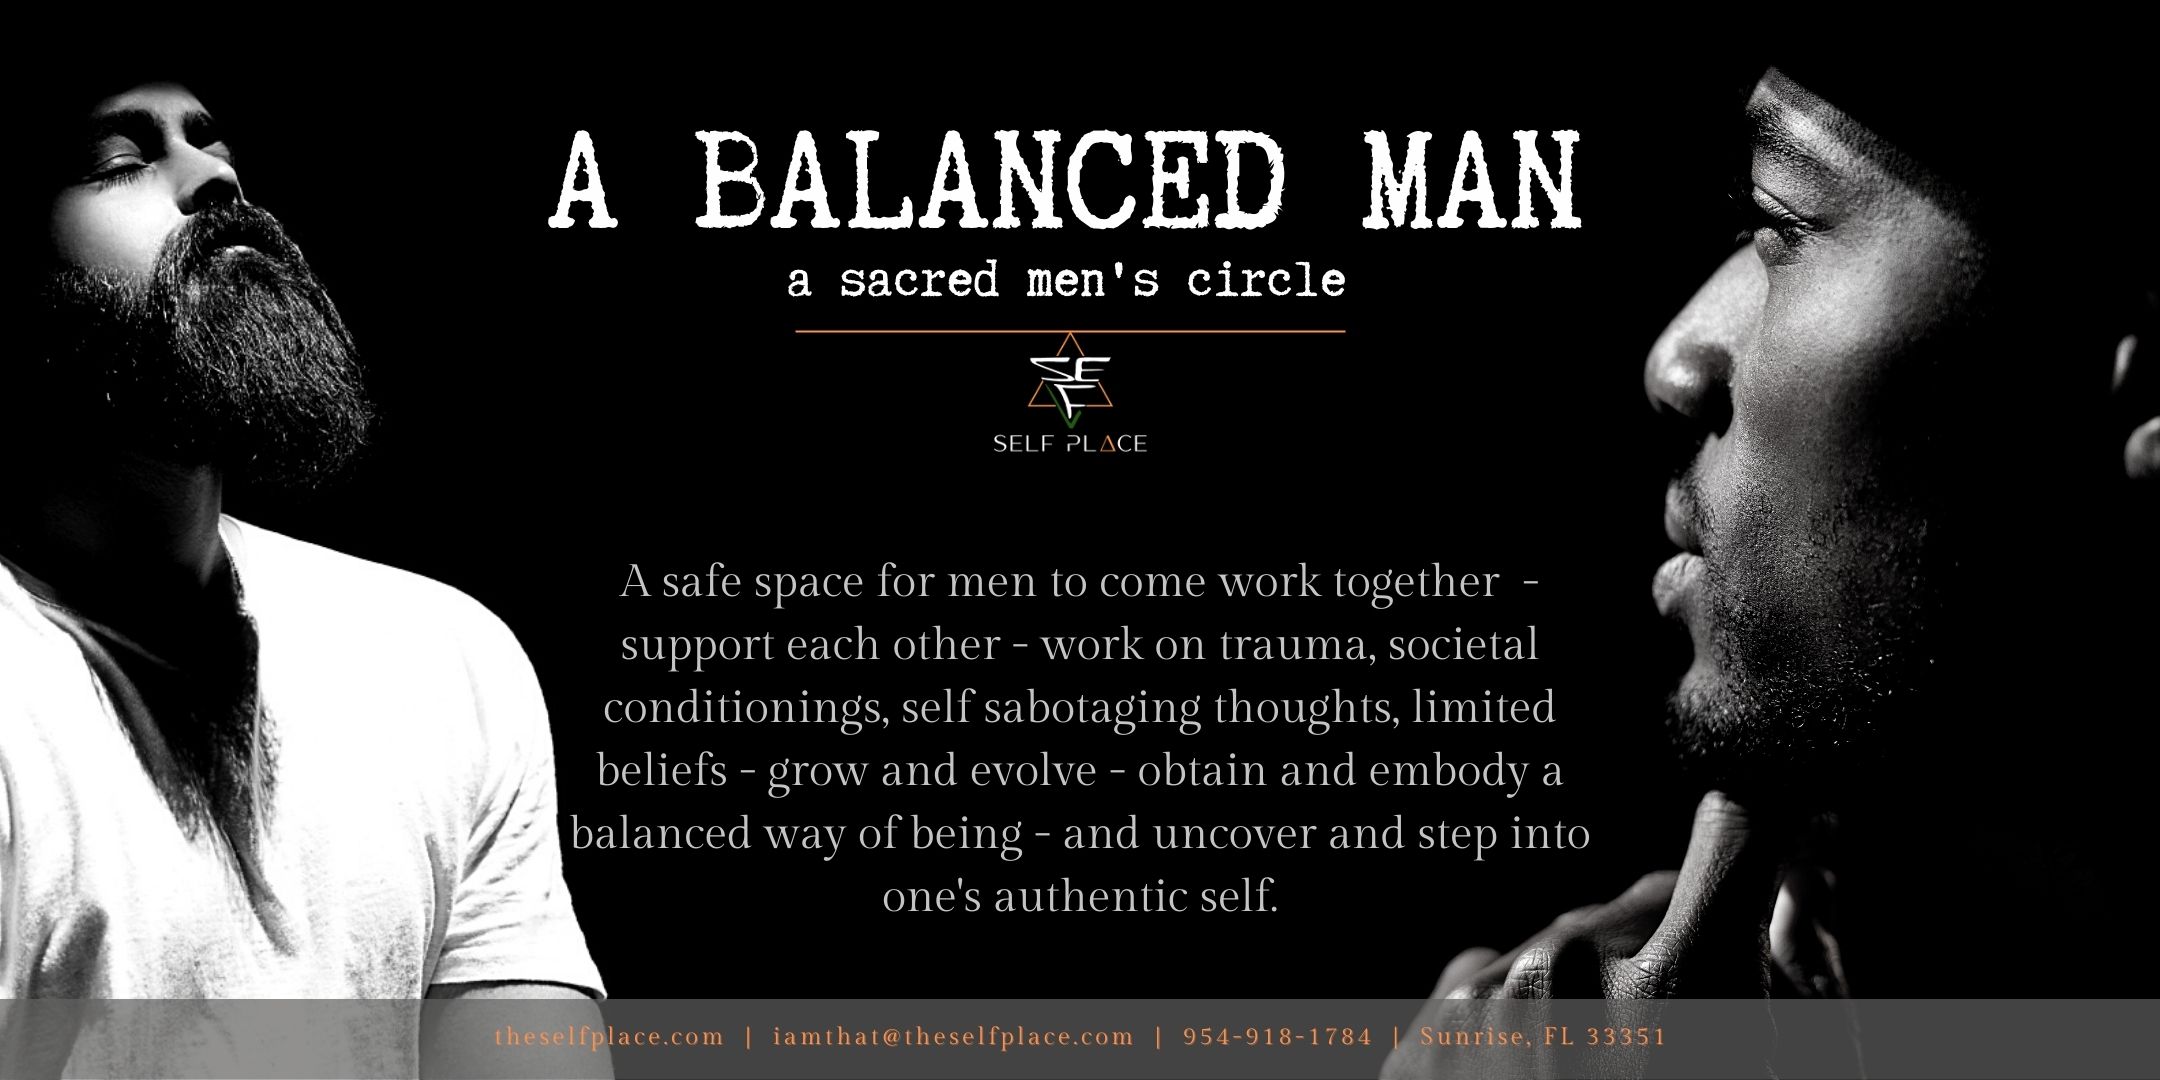 a balanced man - a sacred men's circle